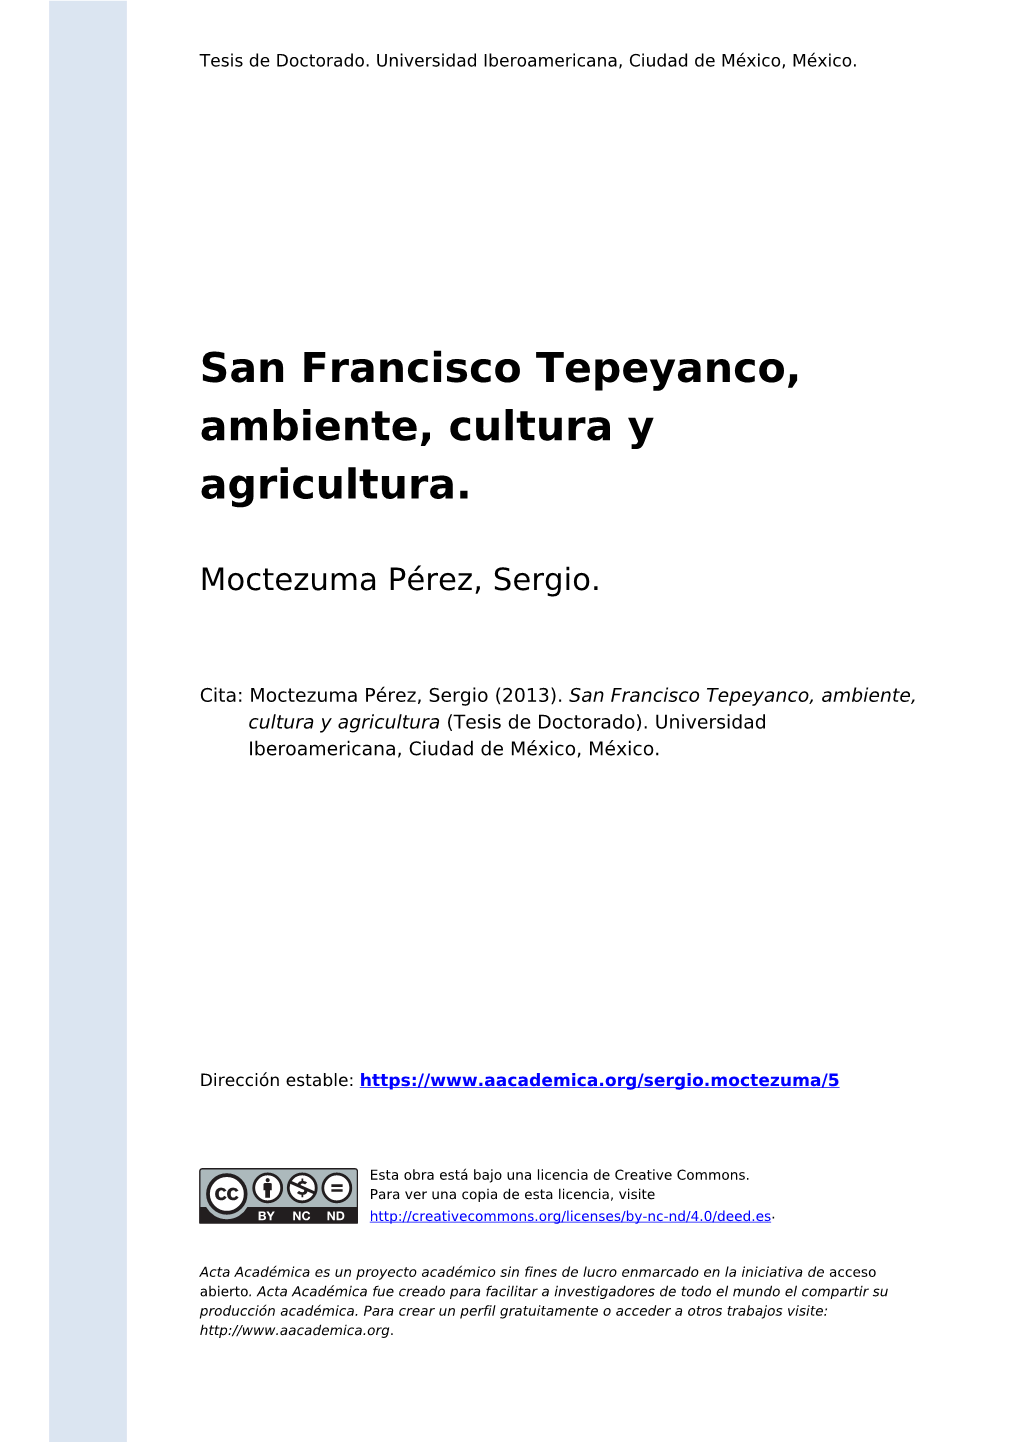 San Francisco Tepeyanco, Ambiente, Cultura Y Agricultura